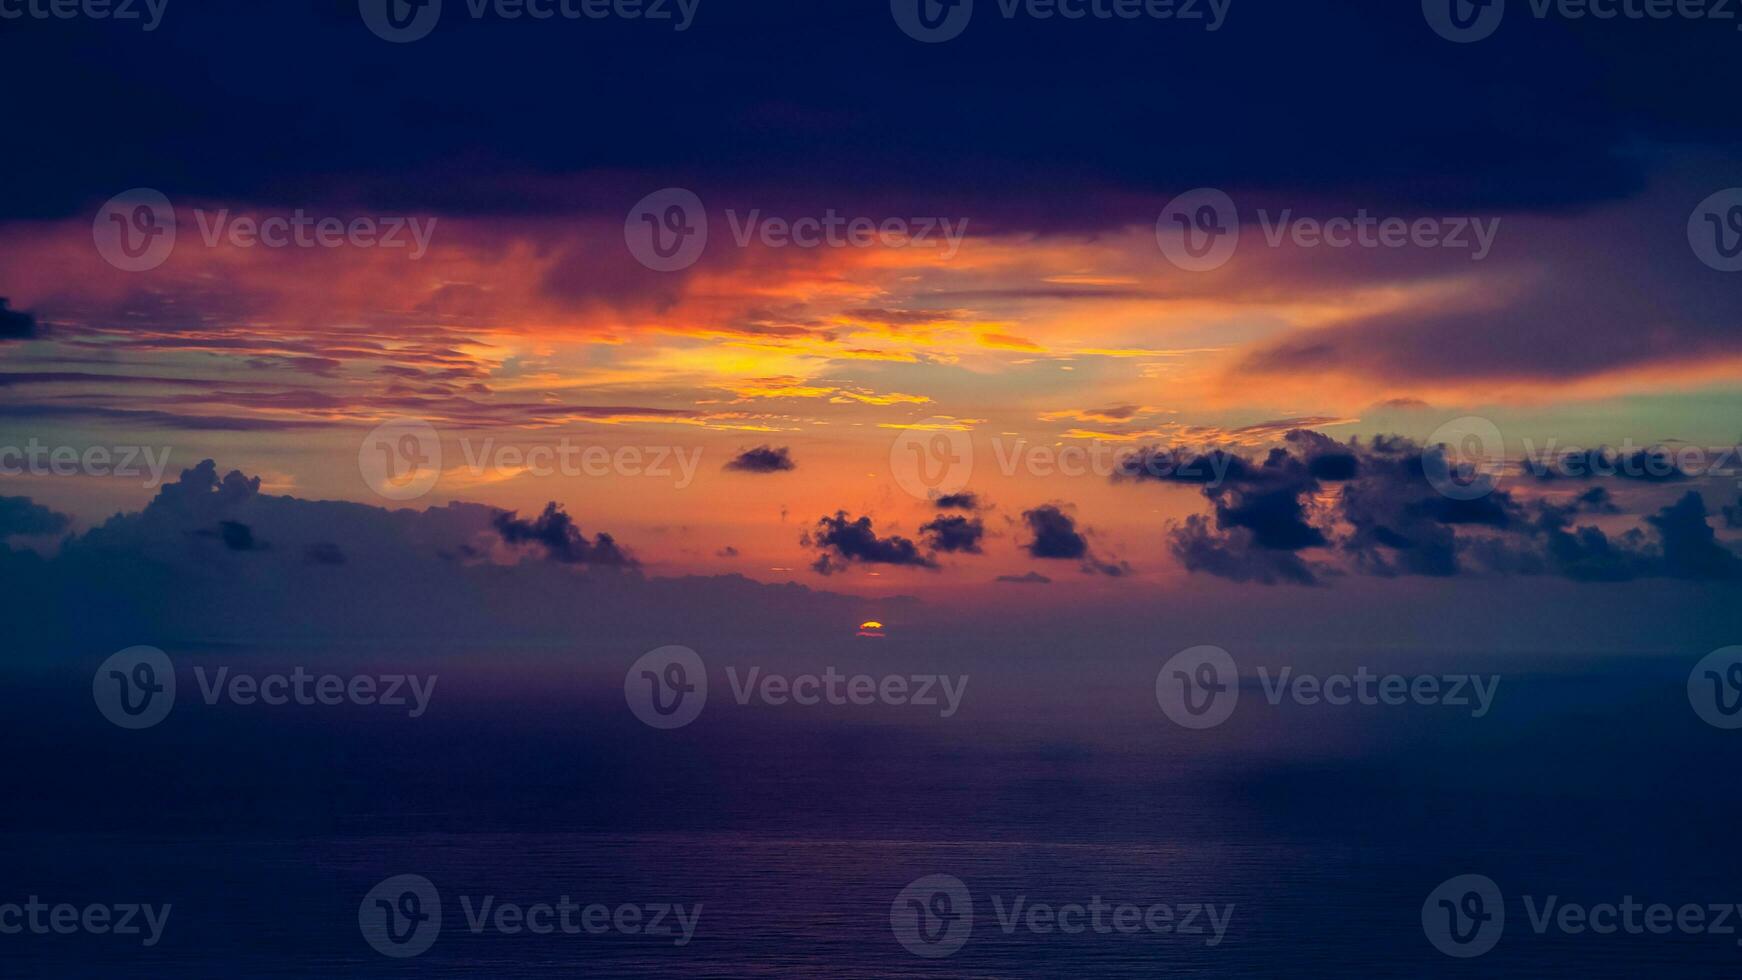 dramatische zonsondergang over de zee foto